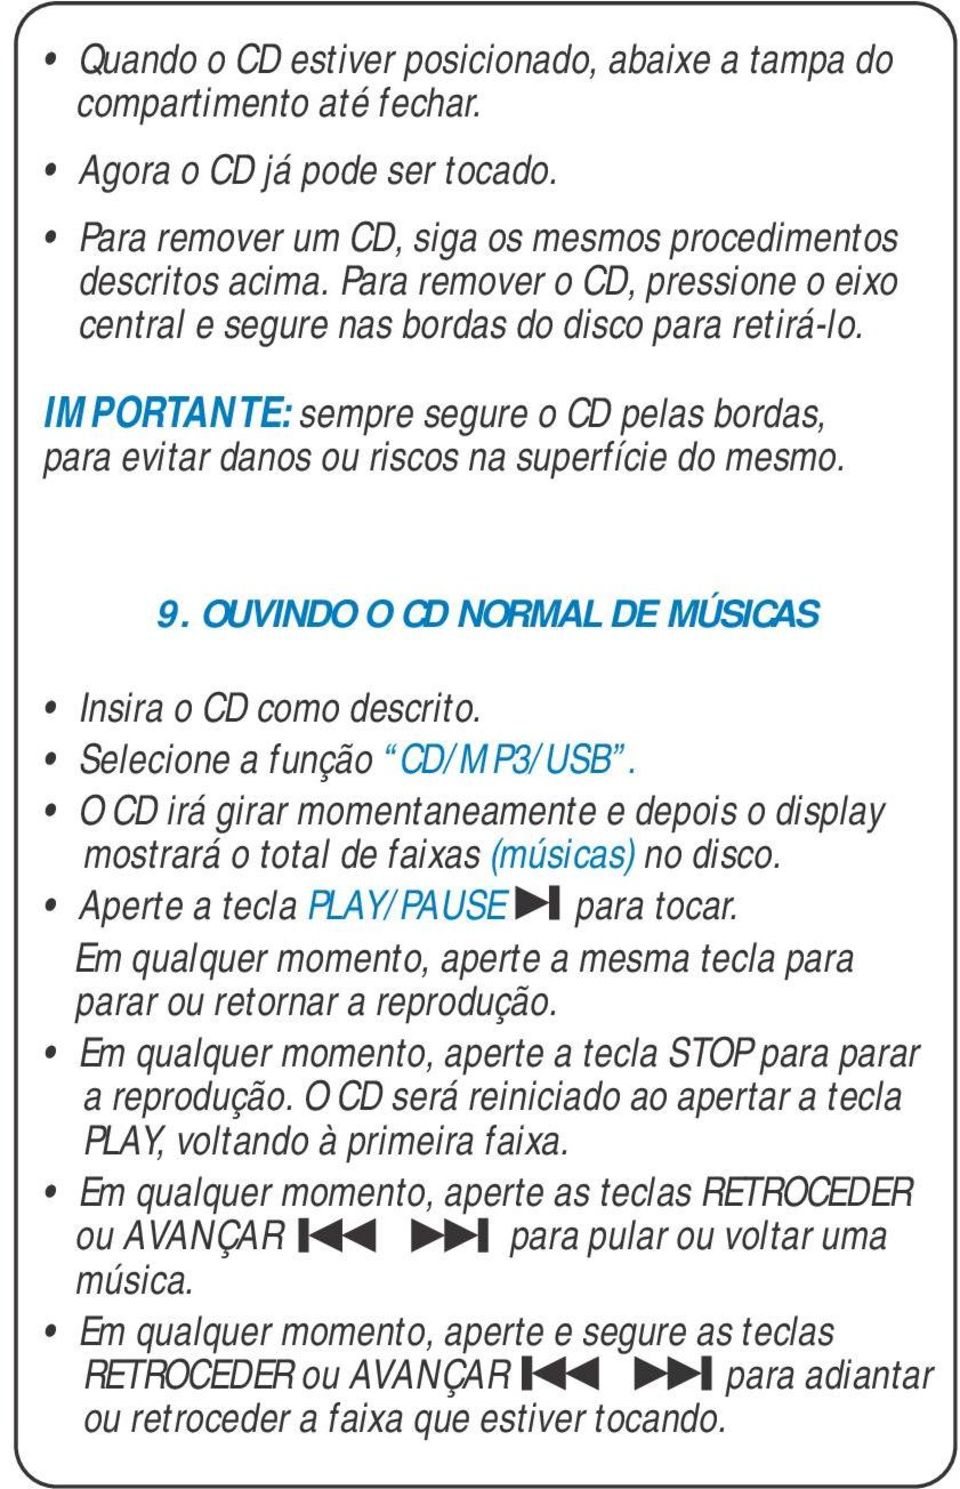 OUVINDO O CD NORMAL DE MÚSICAS Insira o CD como descrito. Selecione a função CD/MP3/USB. O CD irá girar momentaneamente e depois o display mostrará o total de faixas (músicas) no disco.